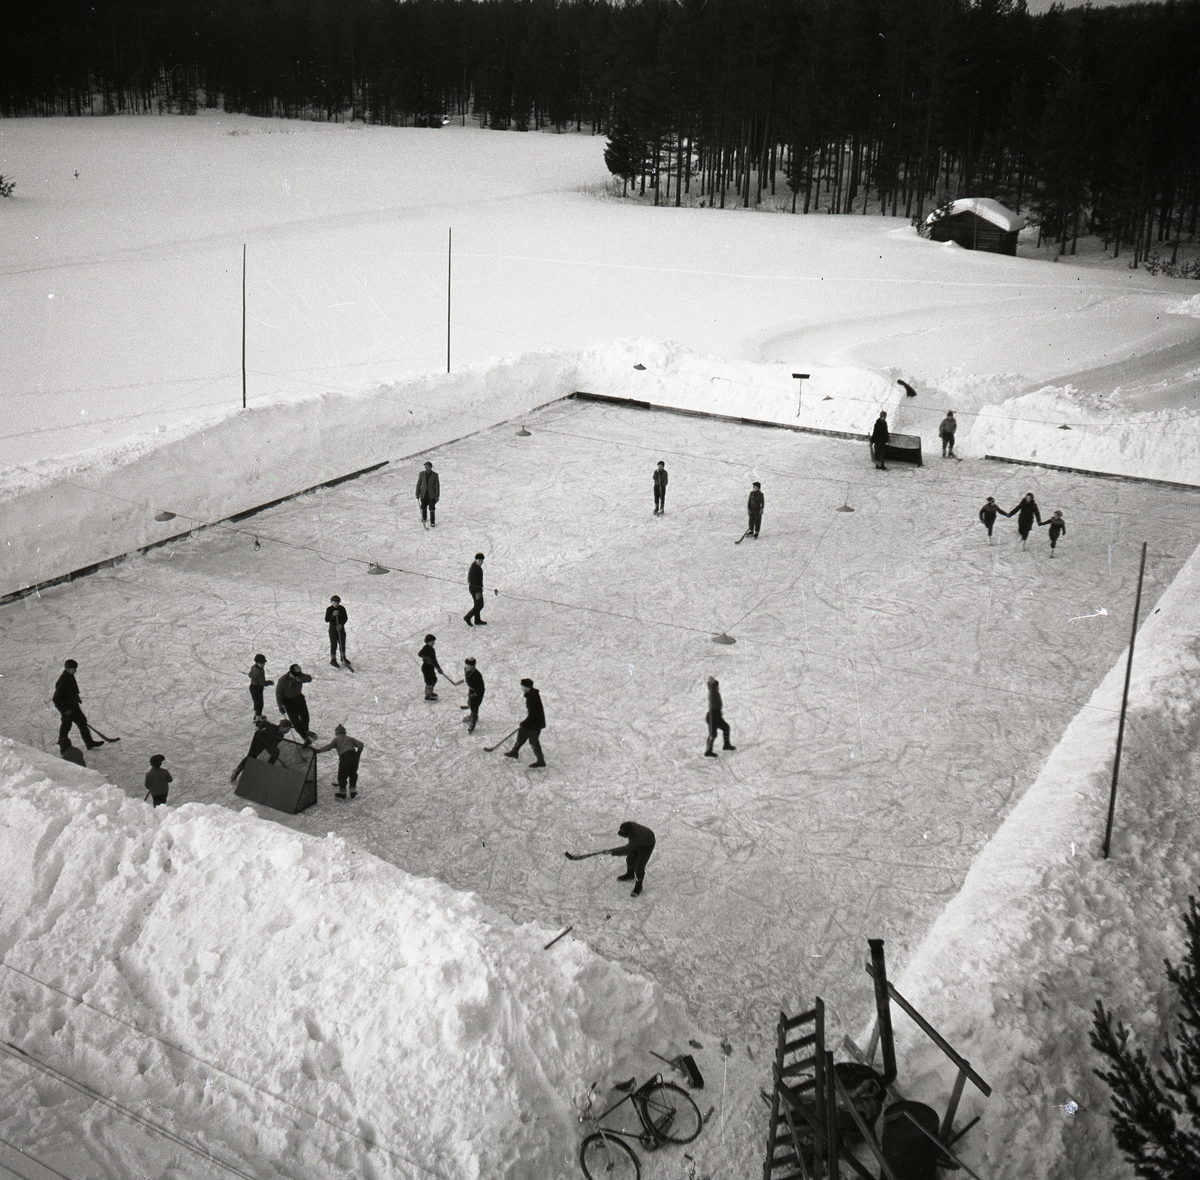 På isplan åks det skridskor och spelas ishockey av en grupp människor. Det finns höga snövallar på isplanens kanter, hockeyklubbor, målburar, cykel, stege, skog och en lite byggnad. Det finns även belysning ovanför isplan. Ishockey Glösboplanen 27 januari 1959.